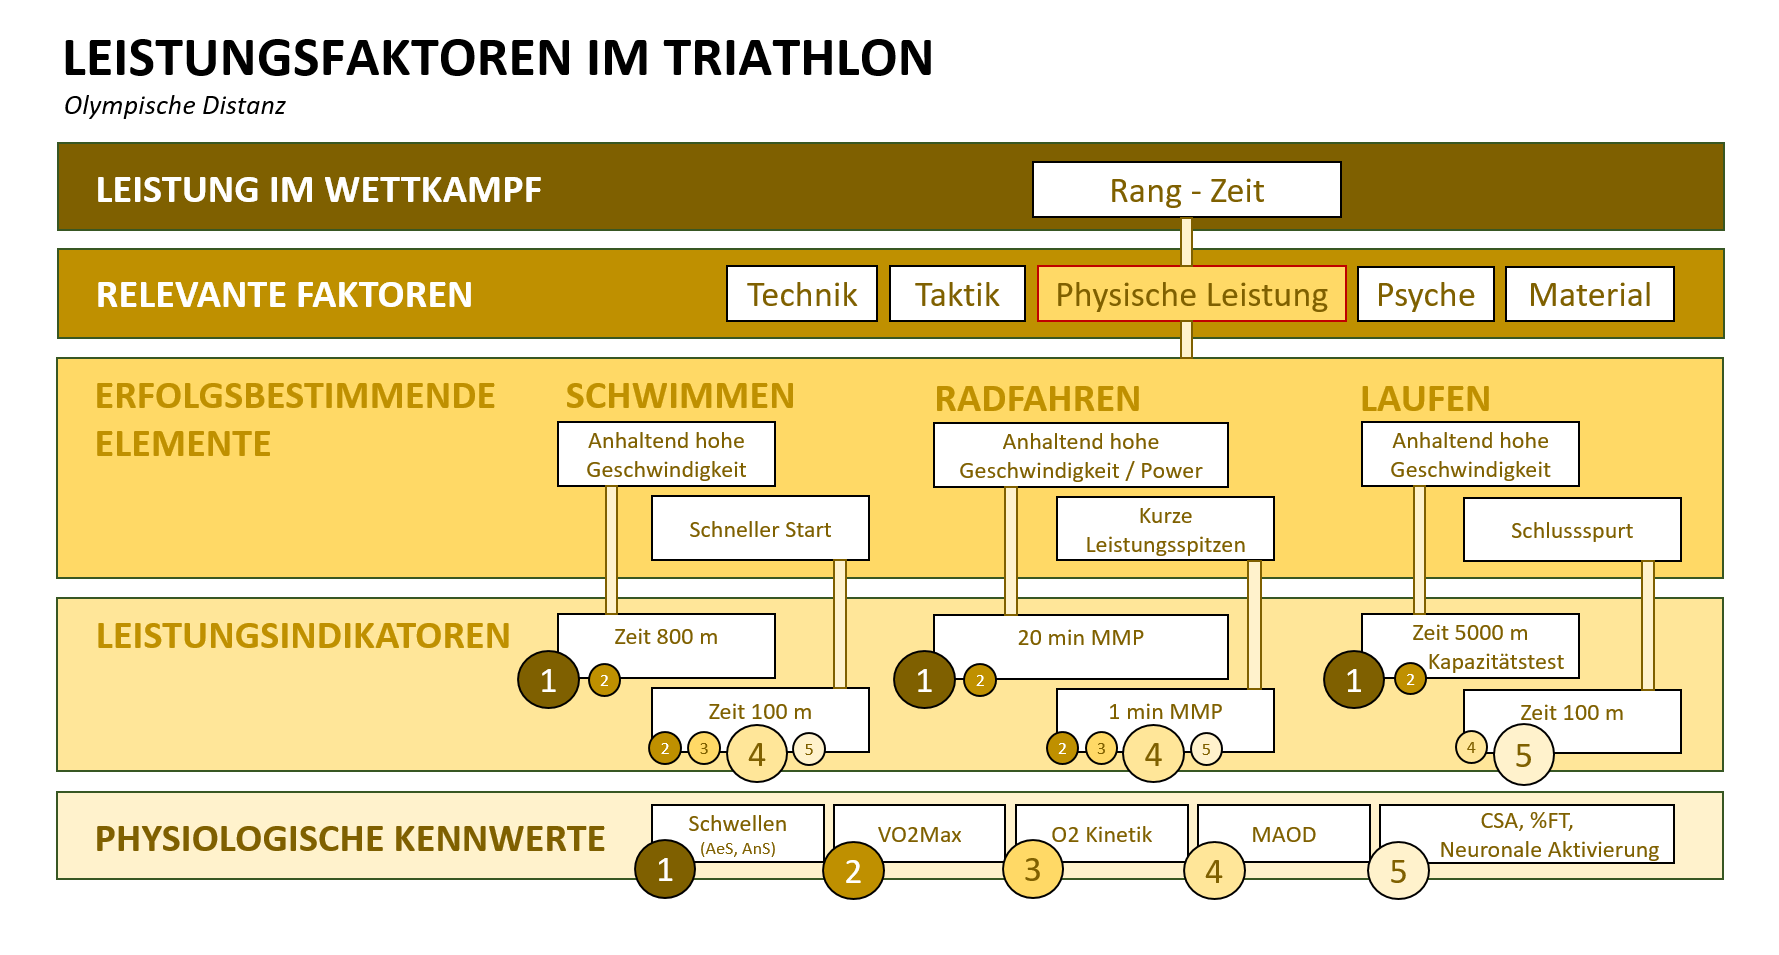 Grafik: Details der Leistungsfaktoren im Triathlon für die Olympische Distanz.